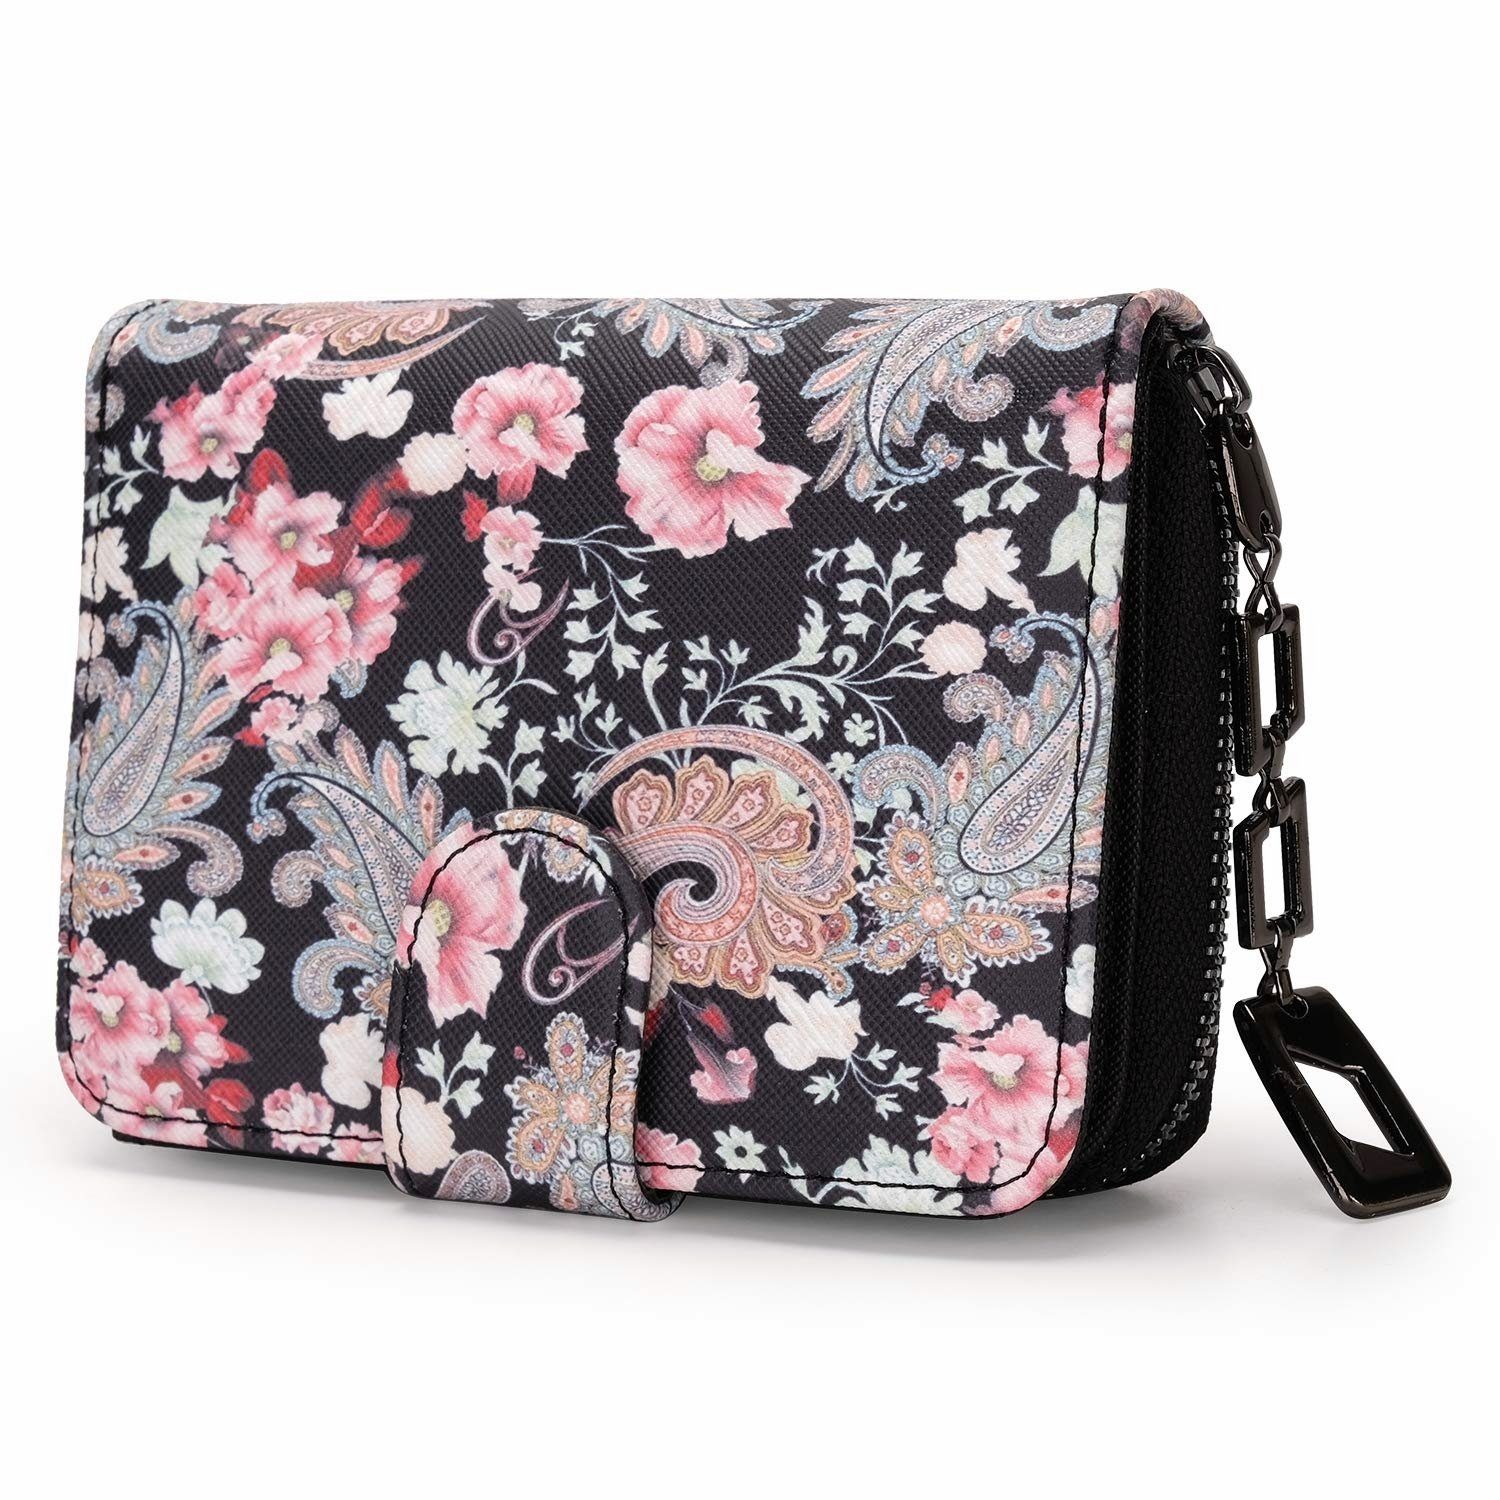 TAN.TOMI Brieftasche Geldbeutel mit Blumen- und Blütenmuster im Mandala Stil, Praktische Aufteilung mit viel Platz Floral Dreams